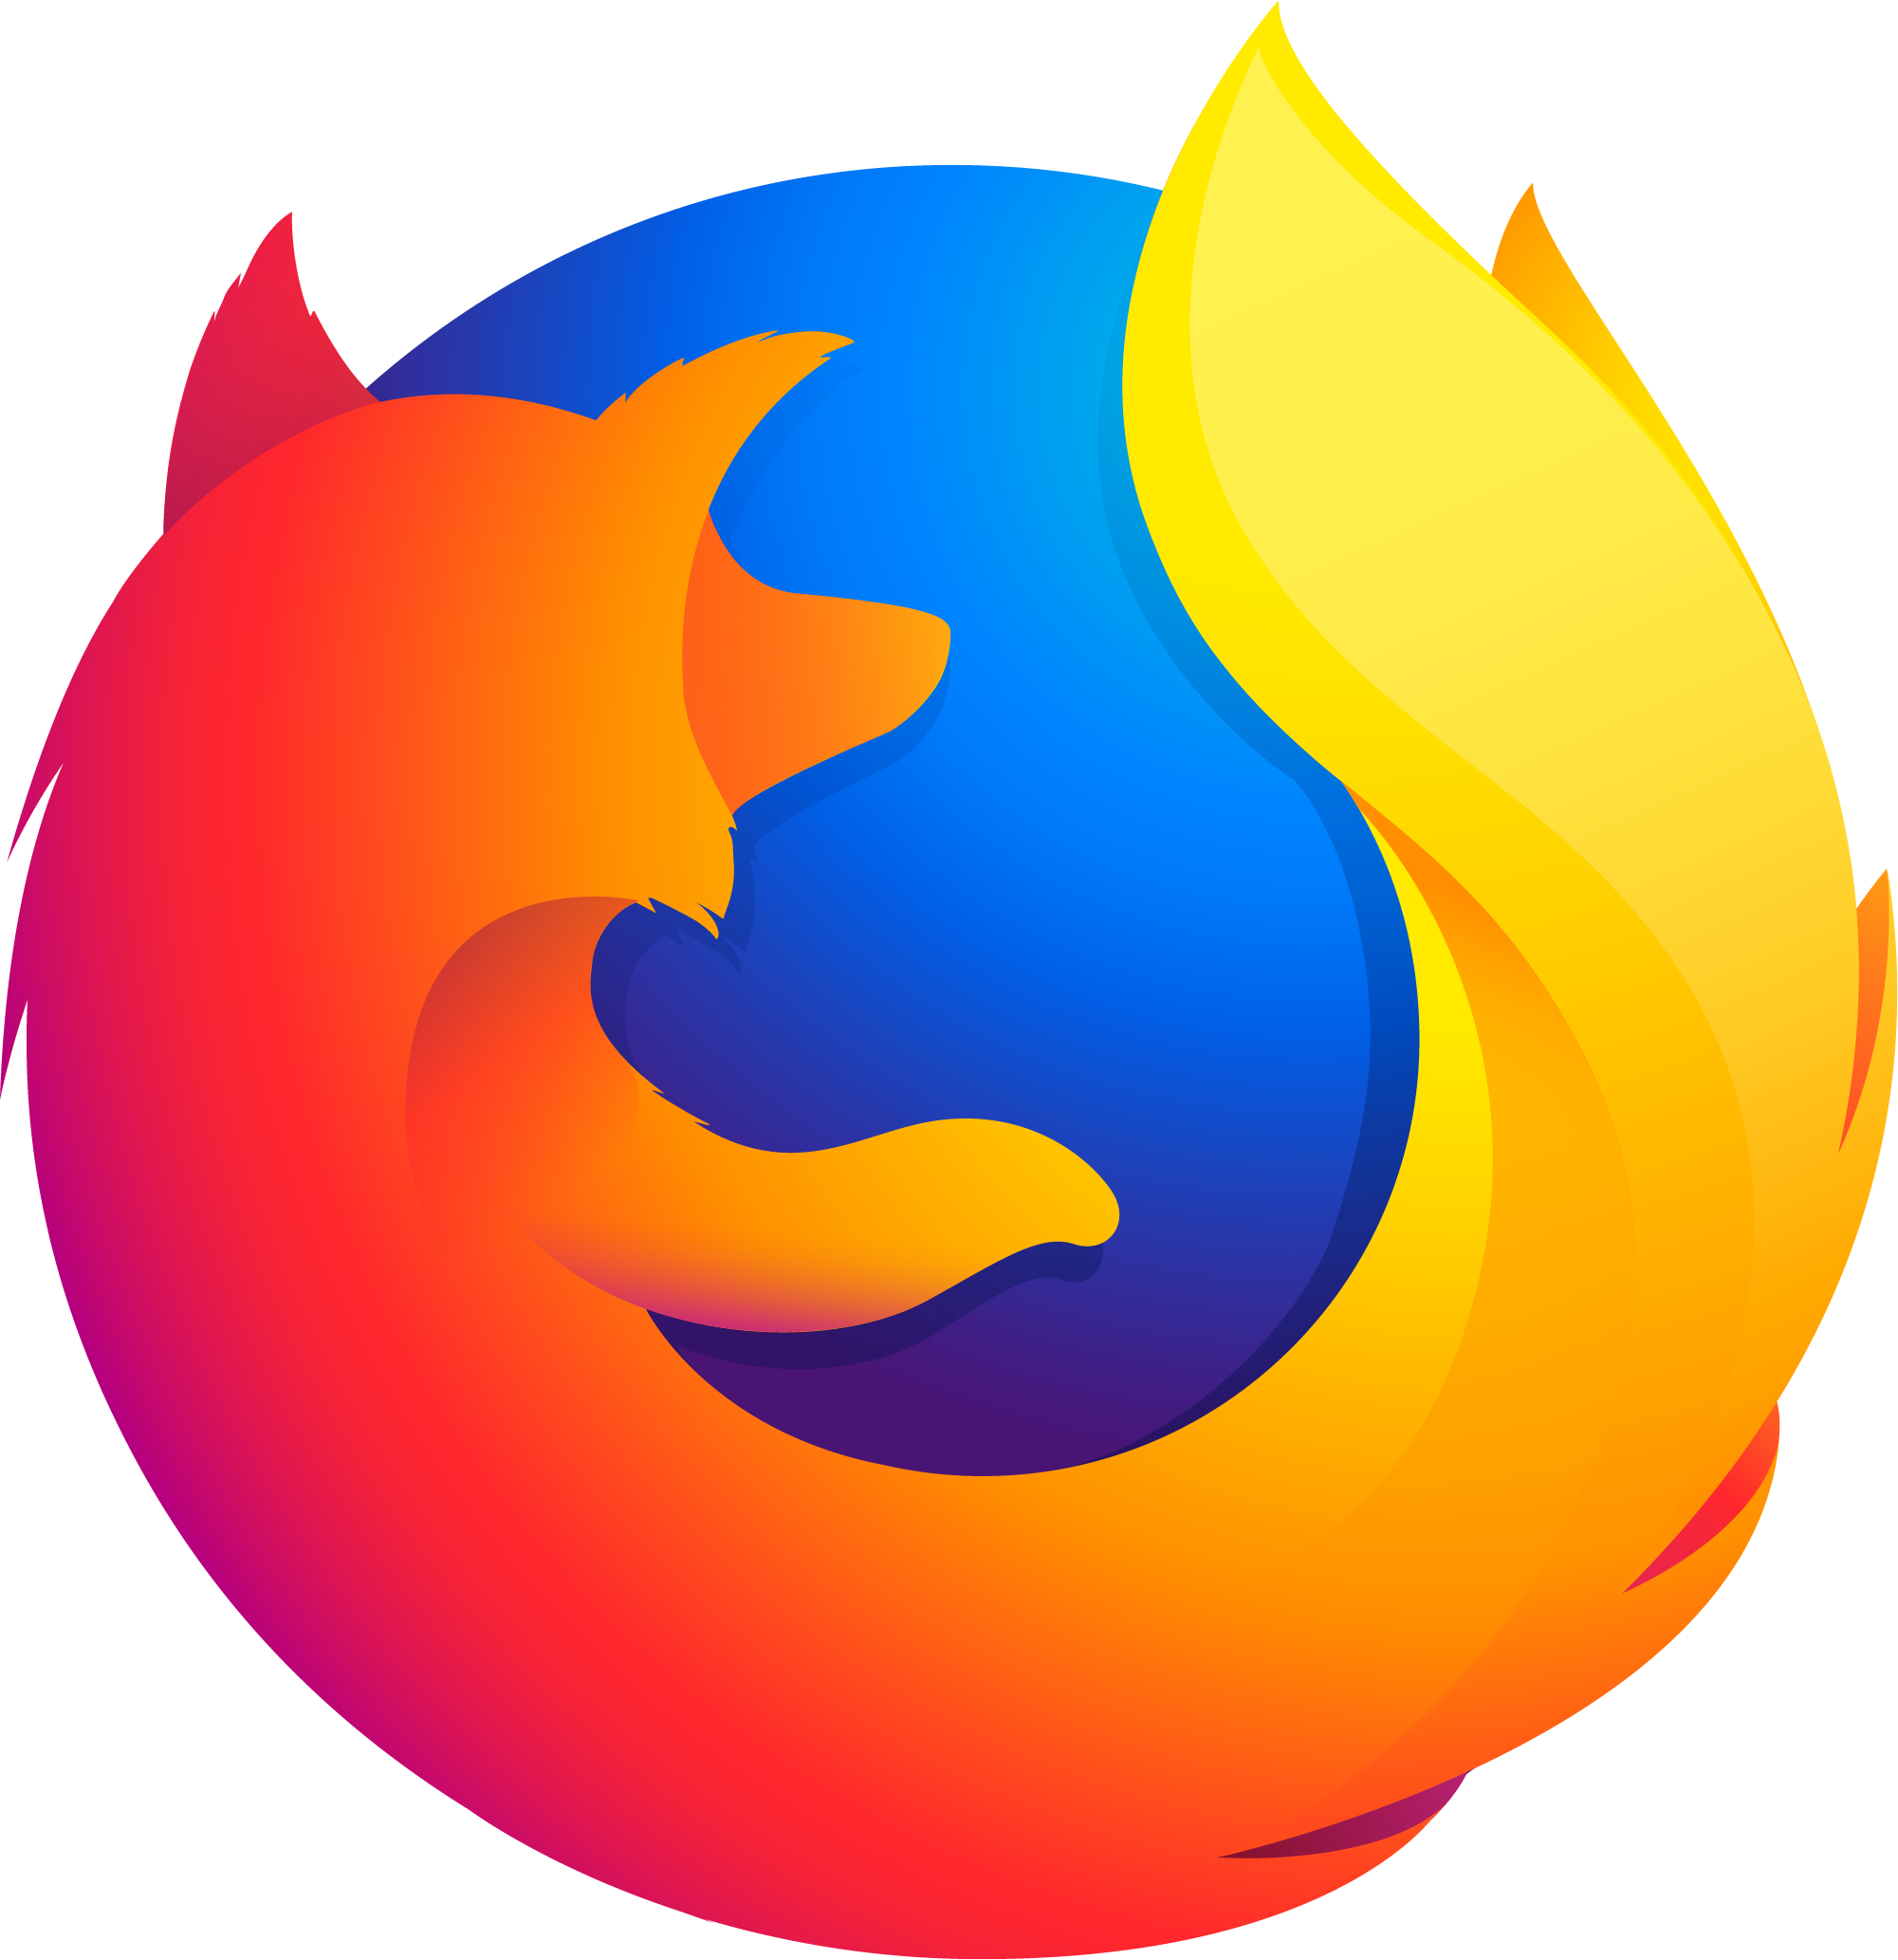 Ярлык firefox. Значок Firefox. Логотип браузера Firefox. Mozilla Firefox New logo. Значок мазила браузер.